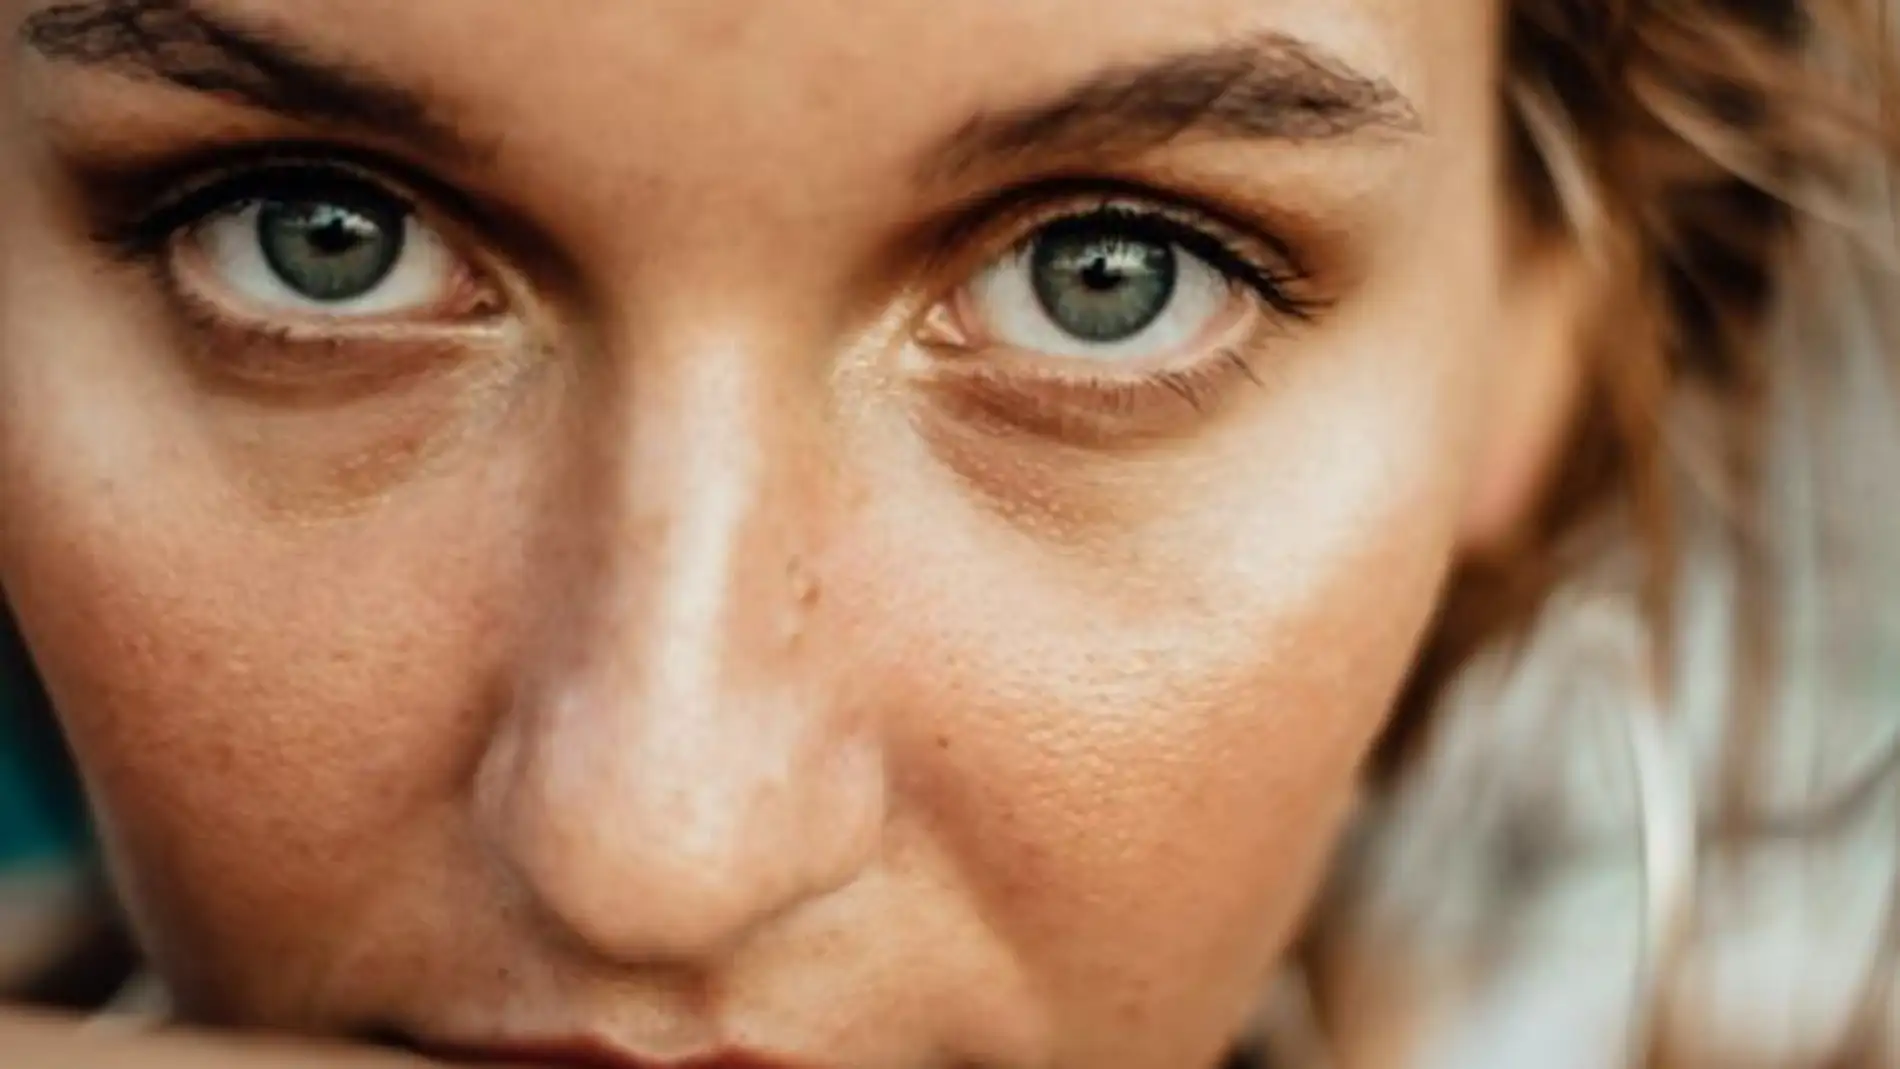 La lipoestructura facial permite mejorar la calidad de la piel en el contorno de los ojos